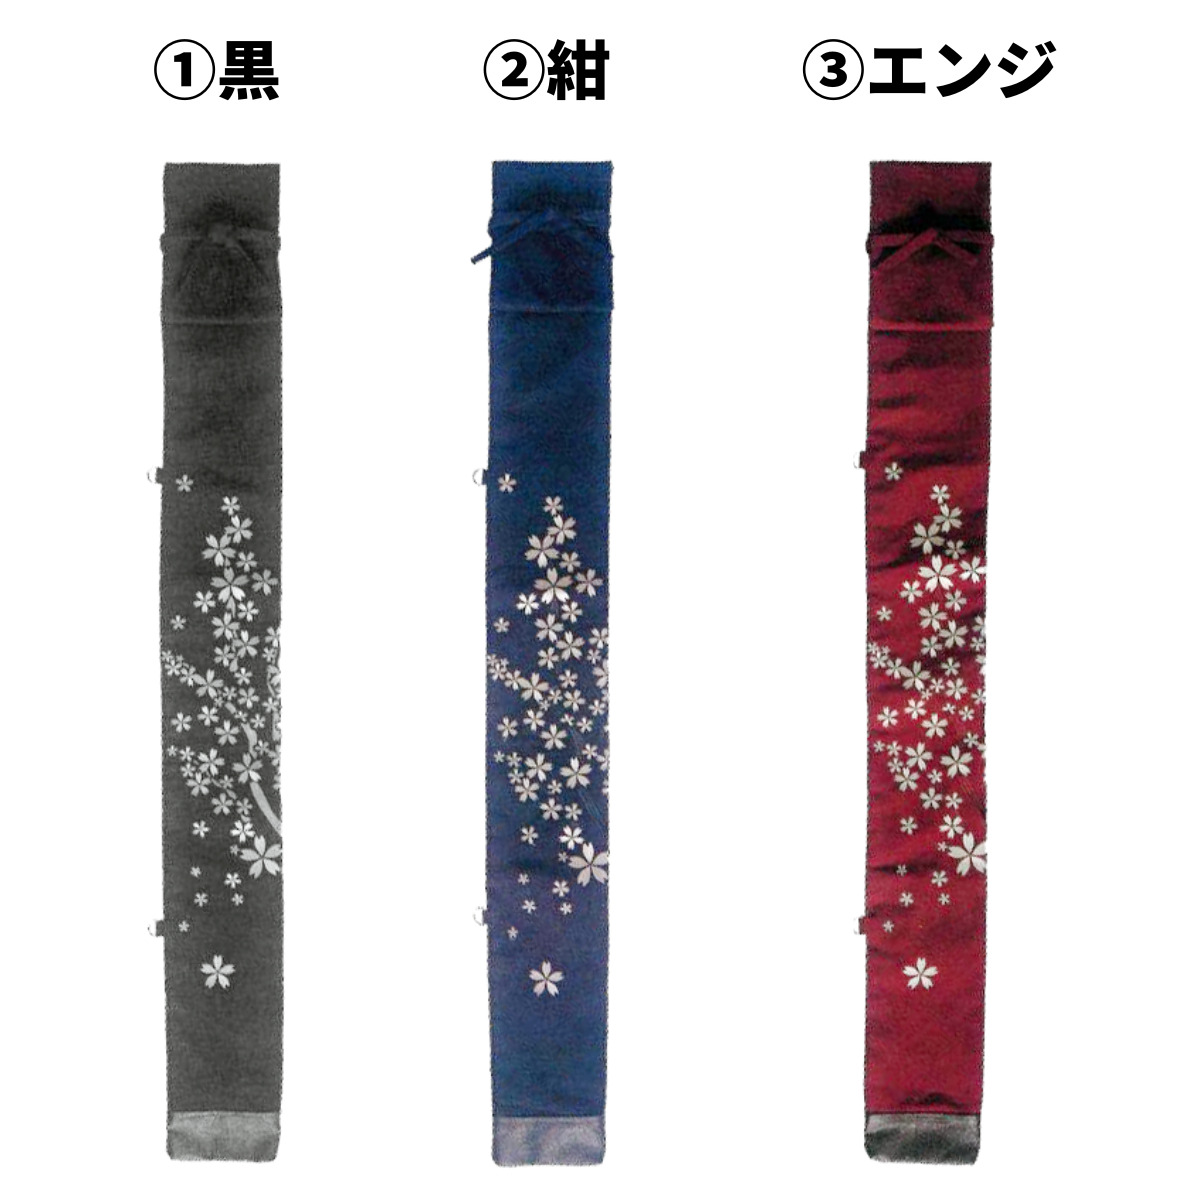 剣道 竹刀袋 8号帆布 小桜 刺繍 略式 3本入 全3色 小さいサイズから39